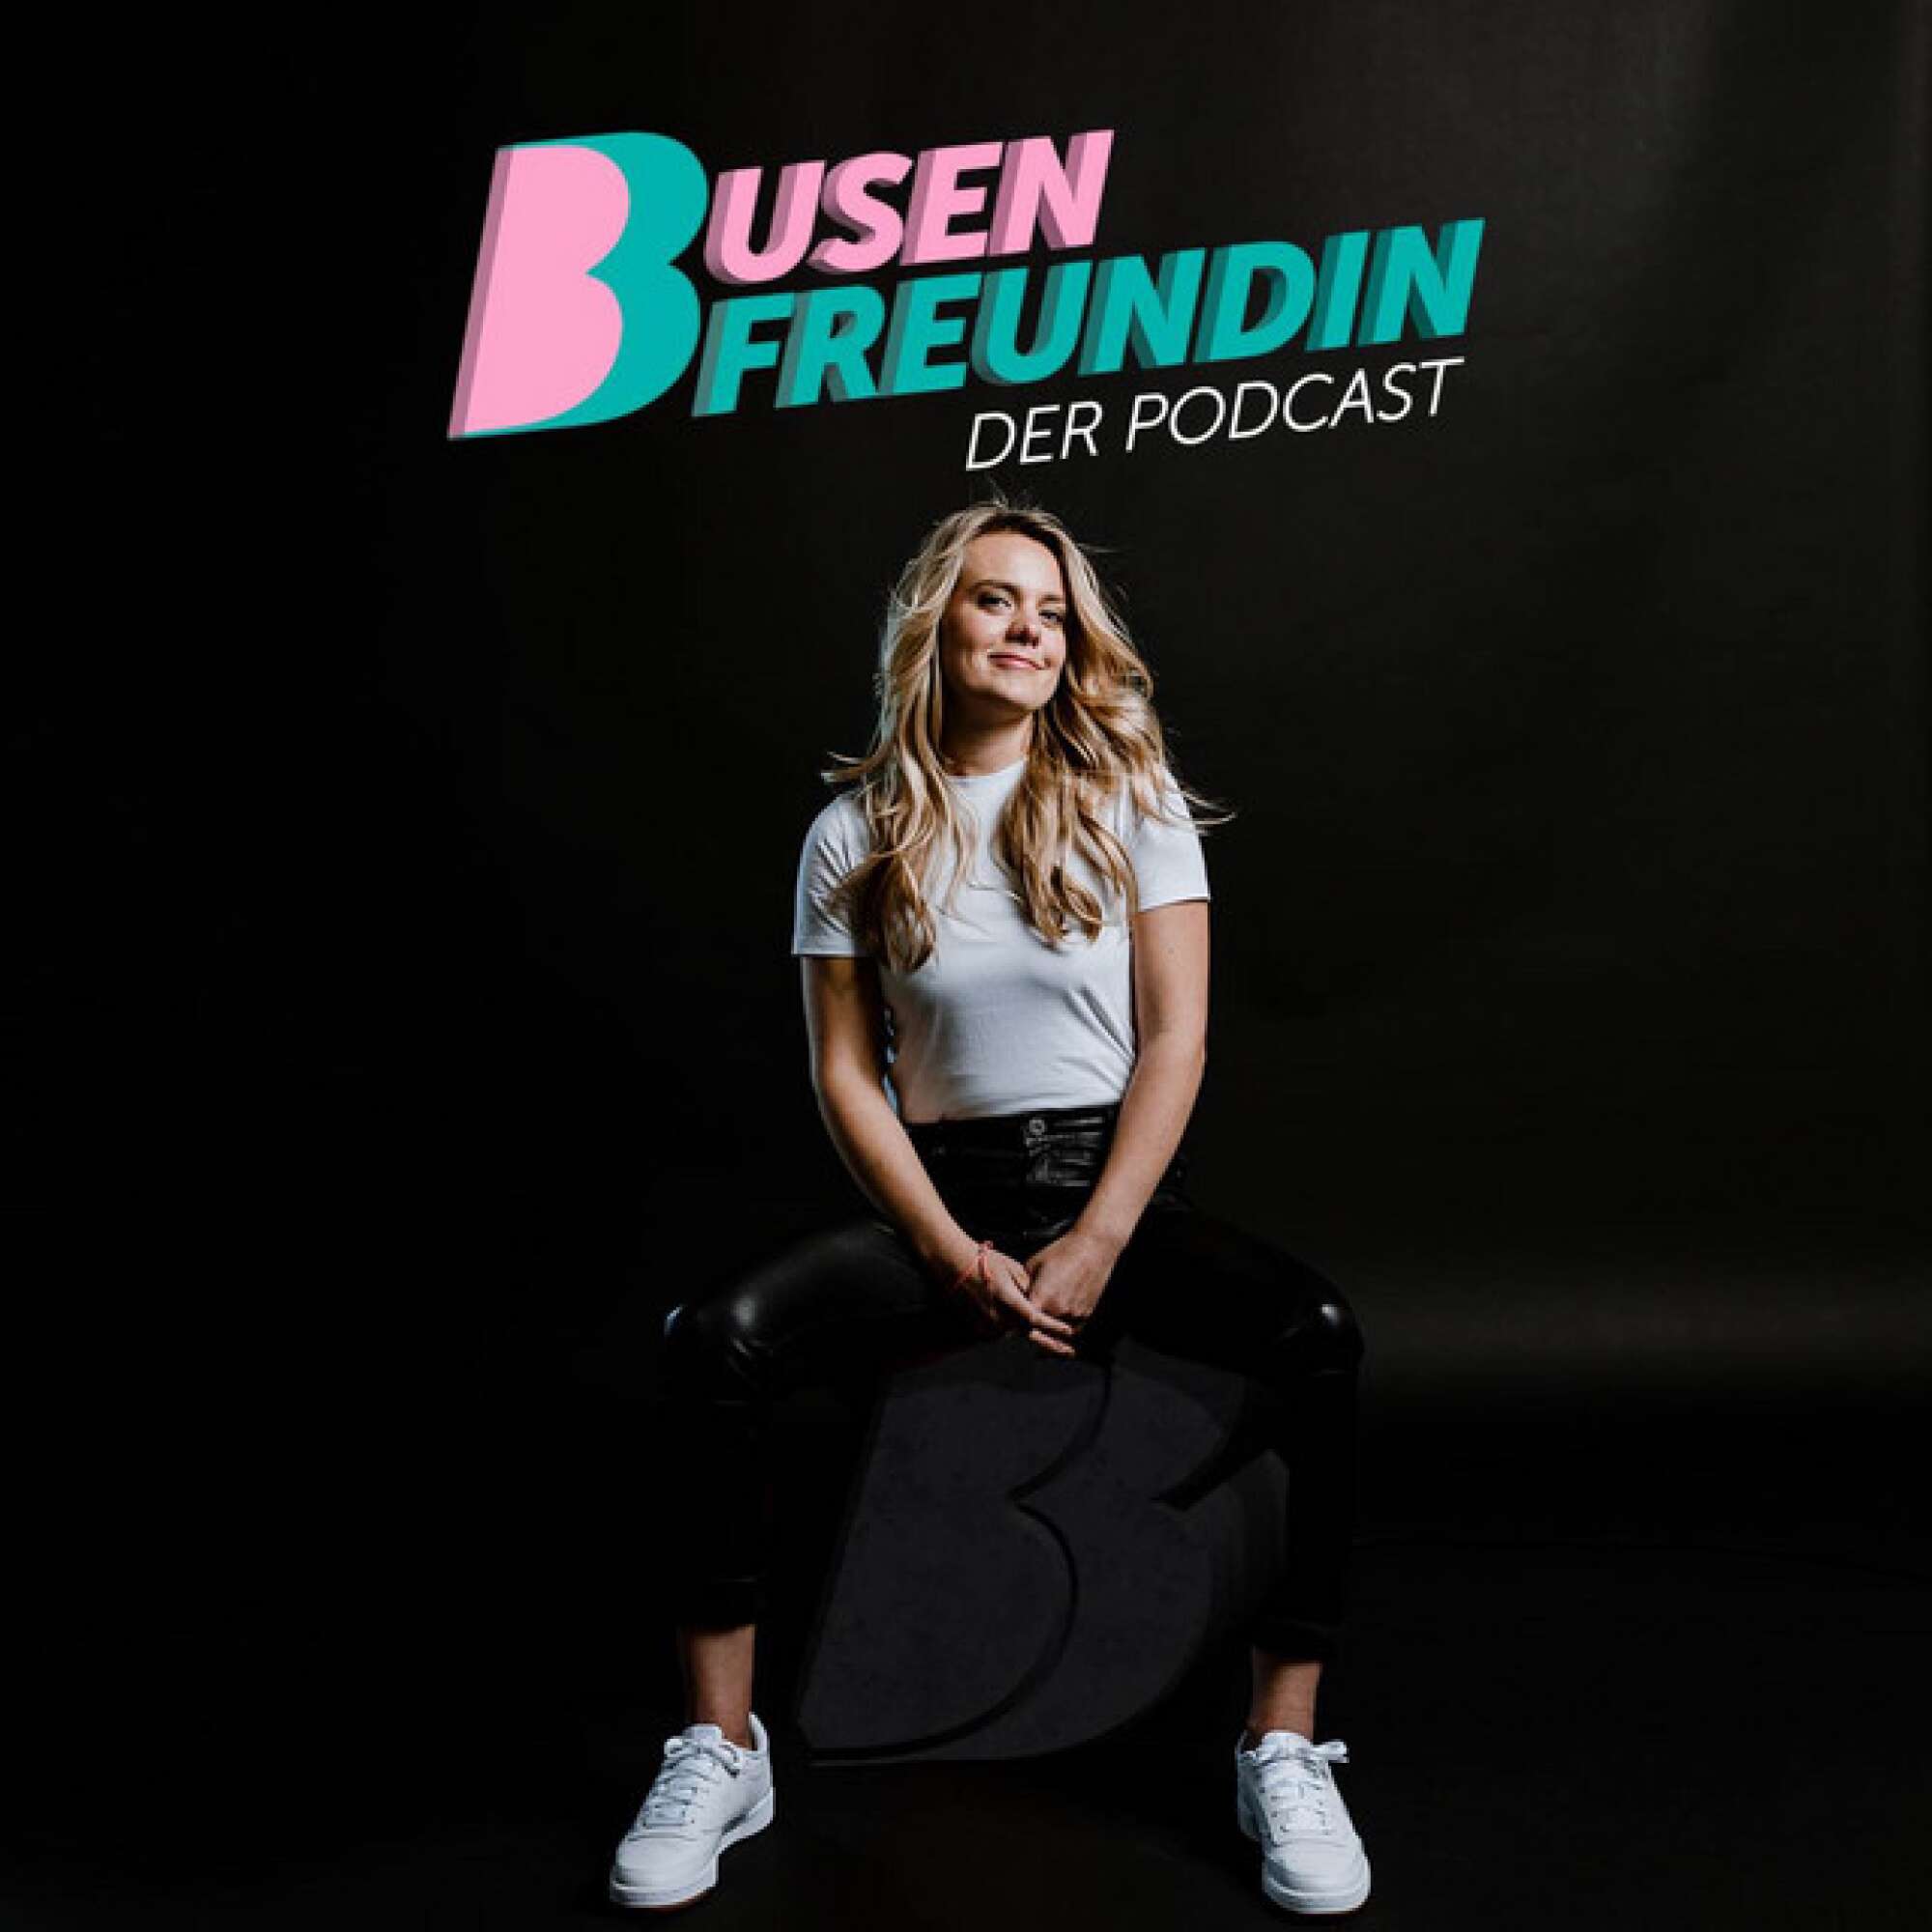 Podcast "Busenfreundin"